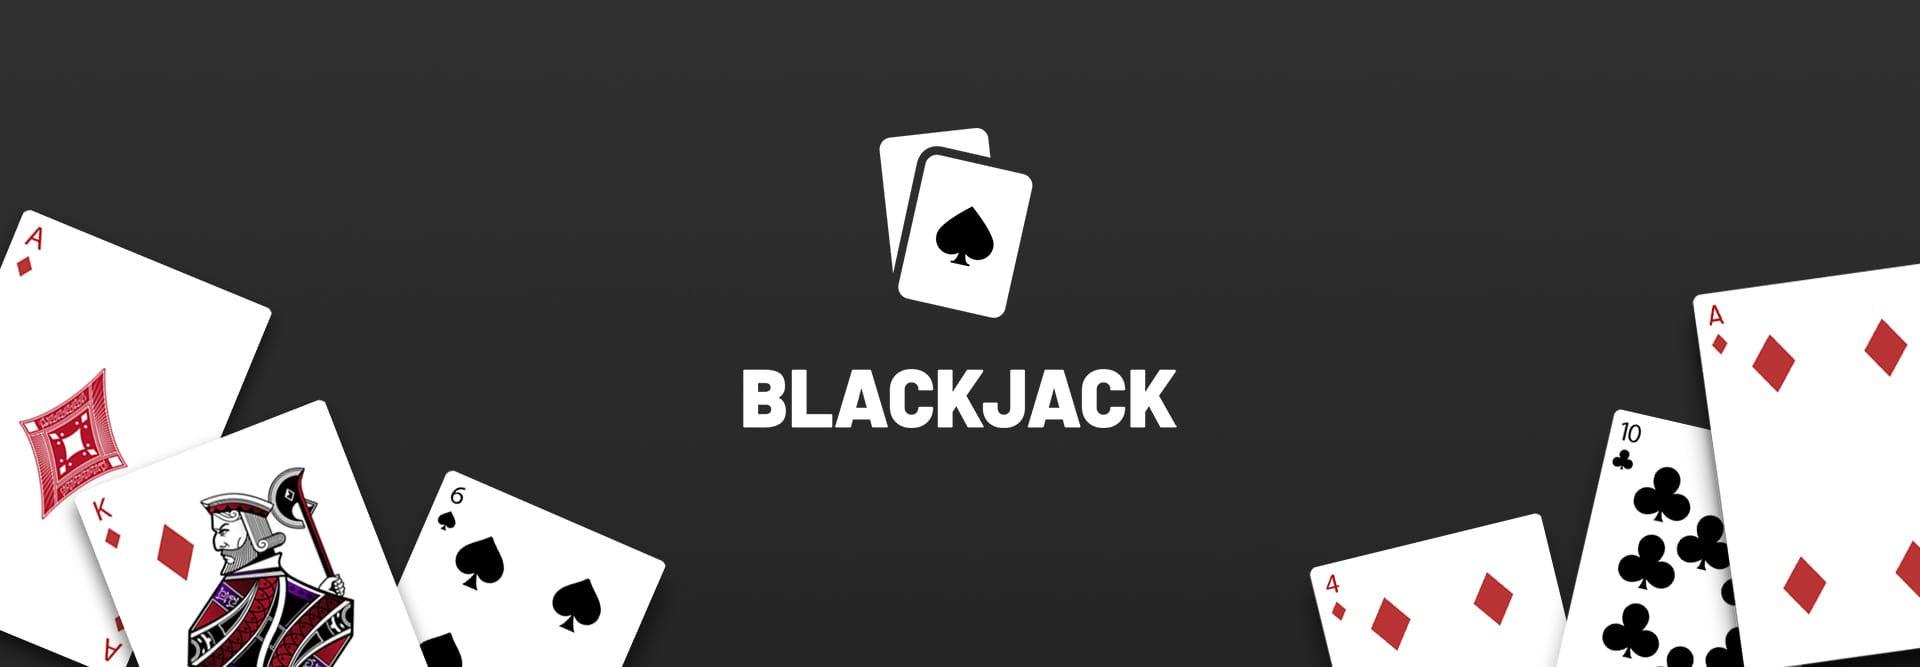 Blackjack game banner